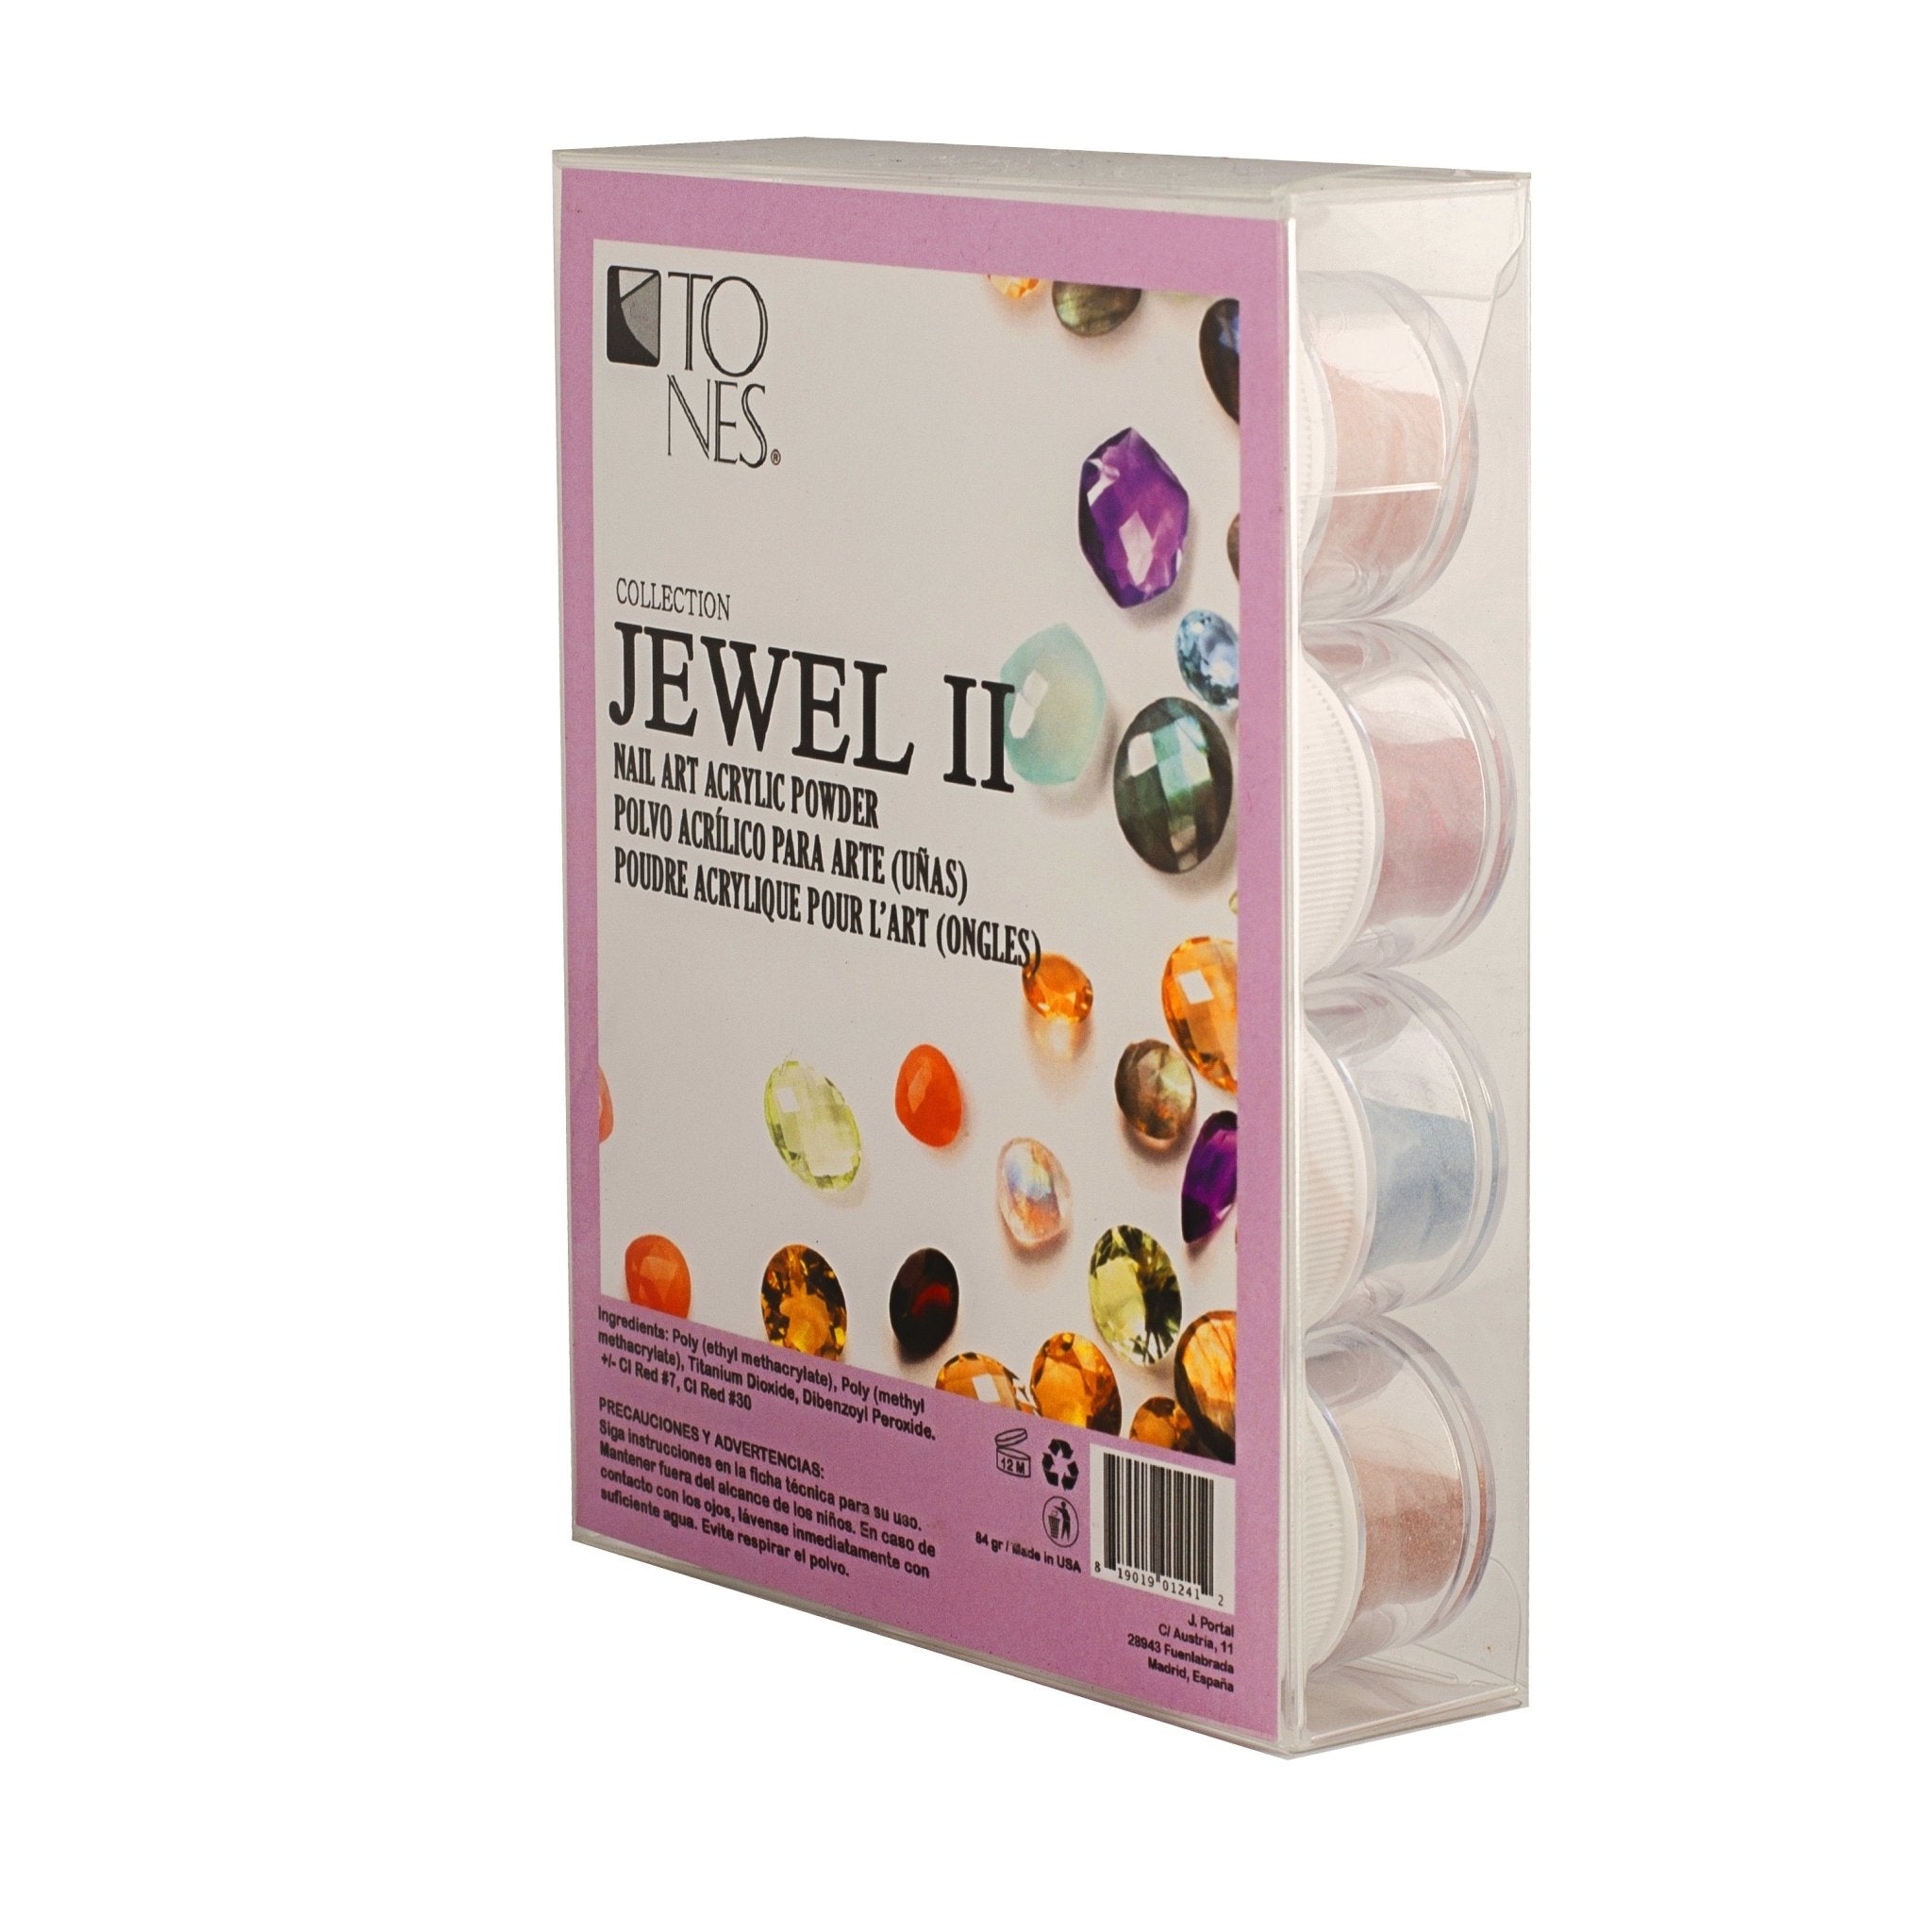 Acrylic Art Powder - Encapsulated Collection: Jewel II (12 x 0.25 oz) - Tones